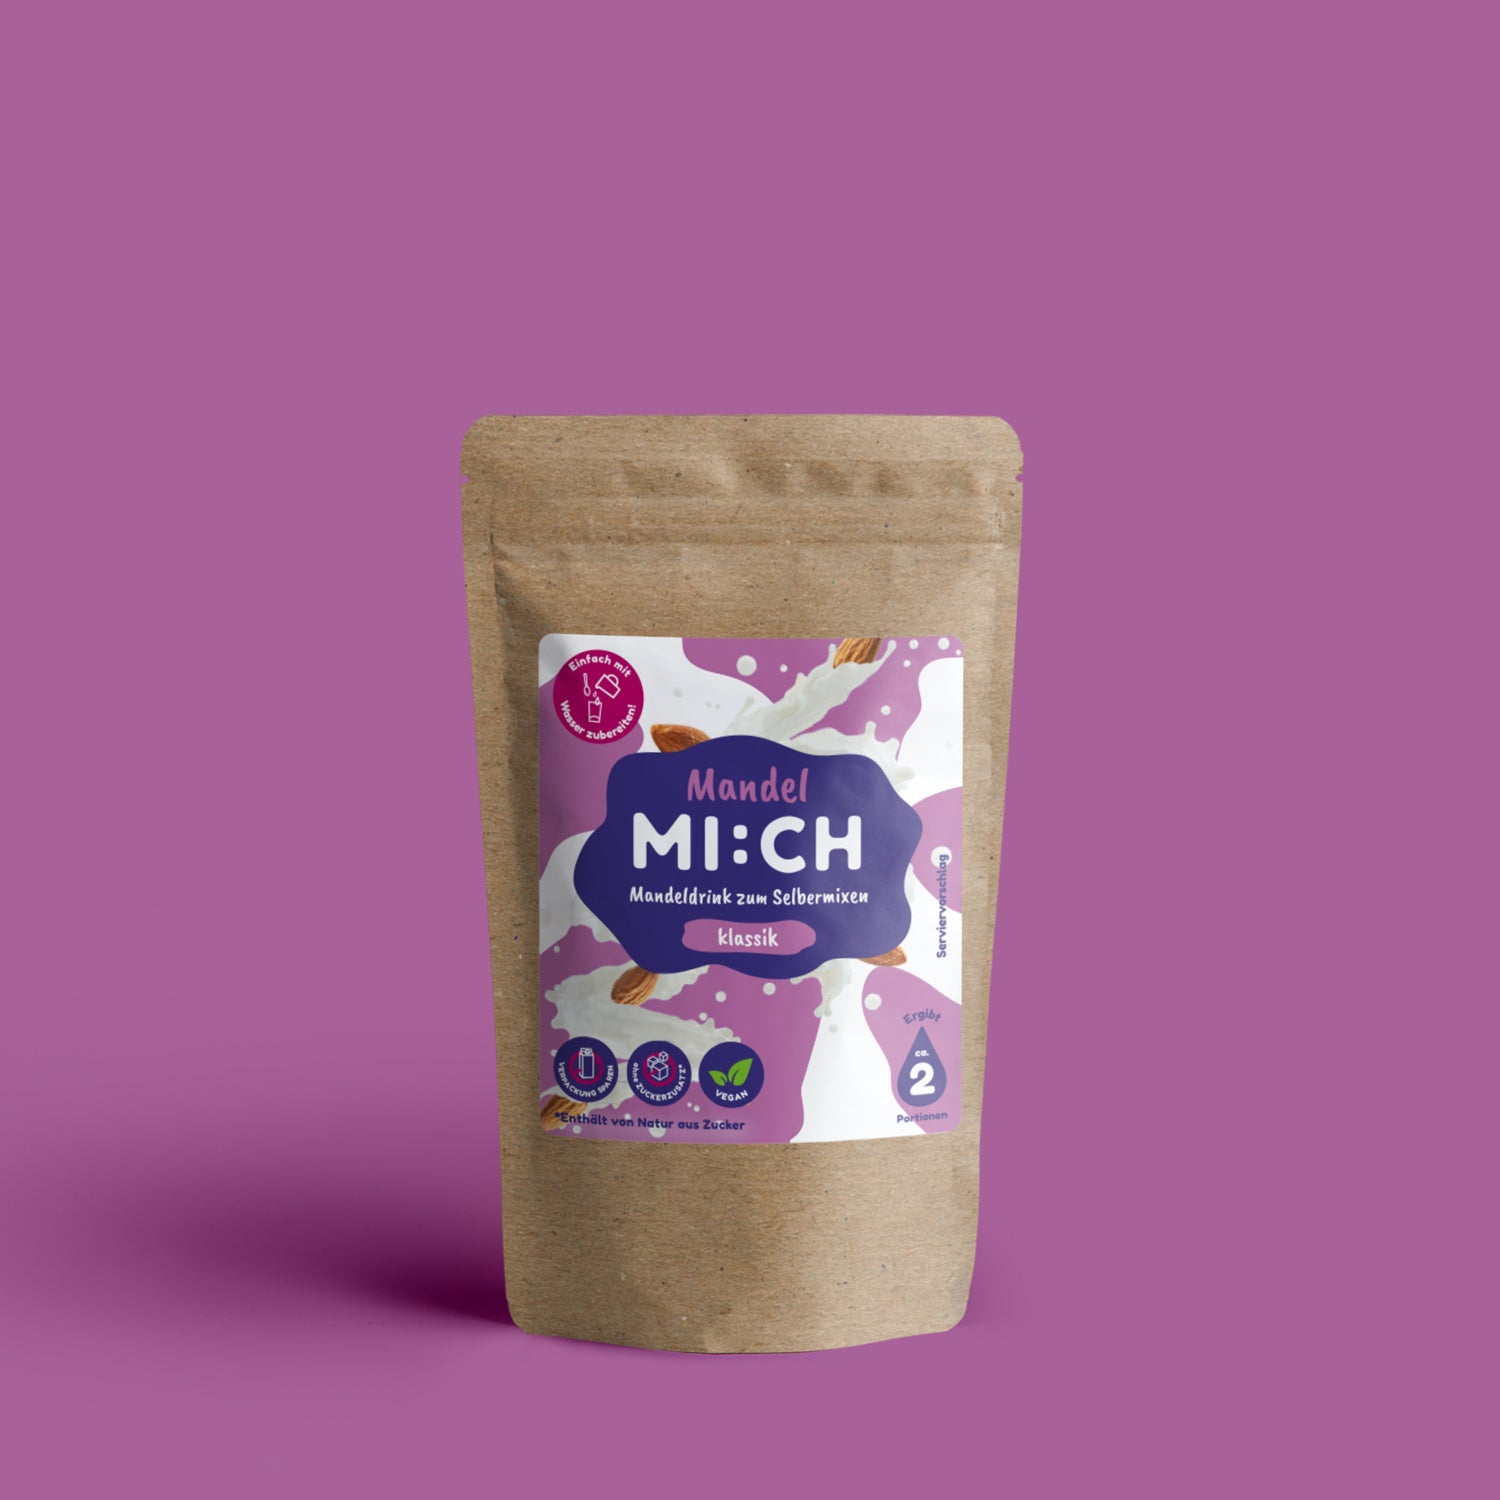 Drinkmich Mandelmilchdrink zum Selbermixen kleine Packung produktfoto vor lila Hintergrund